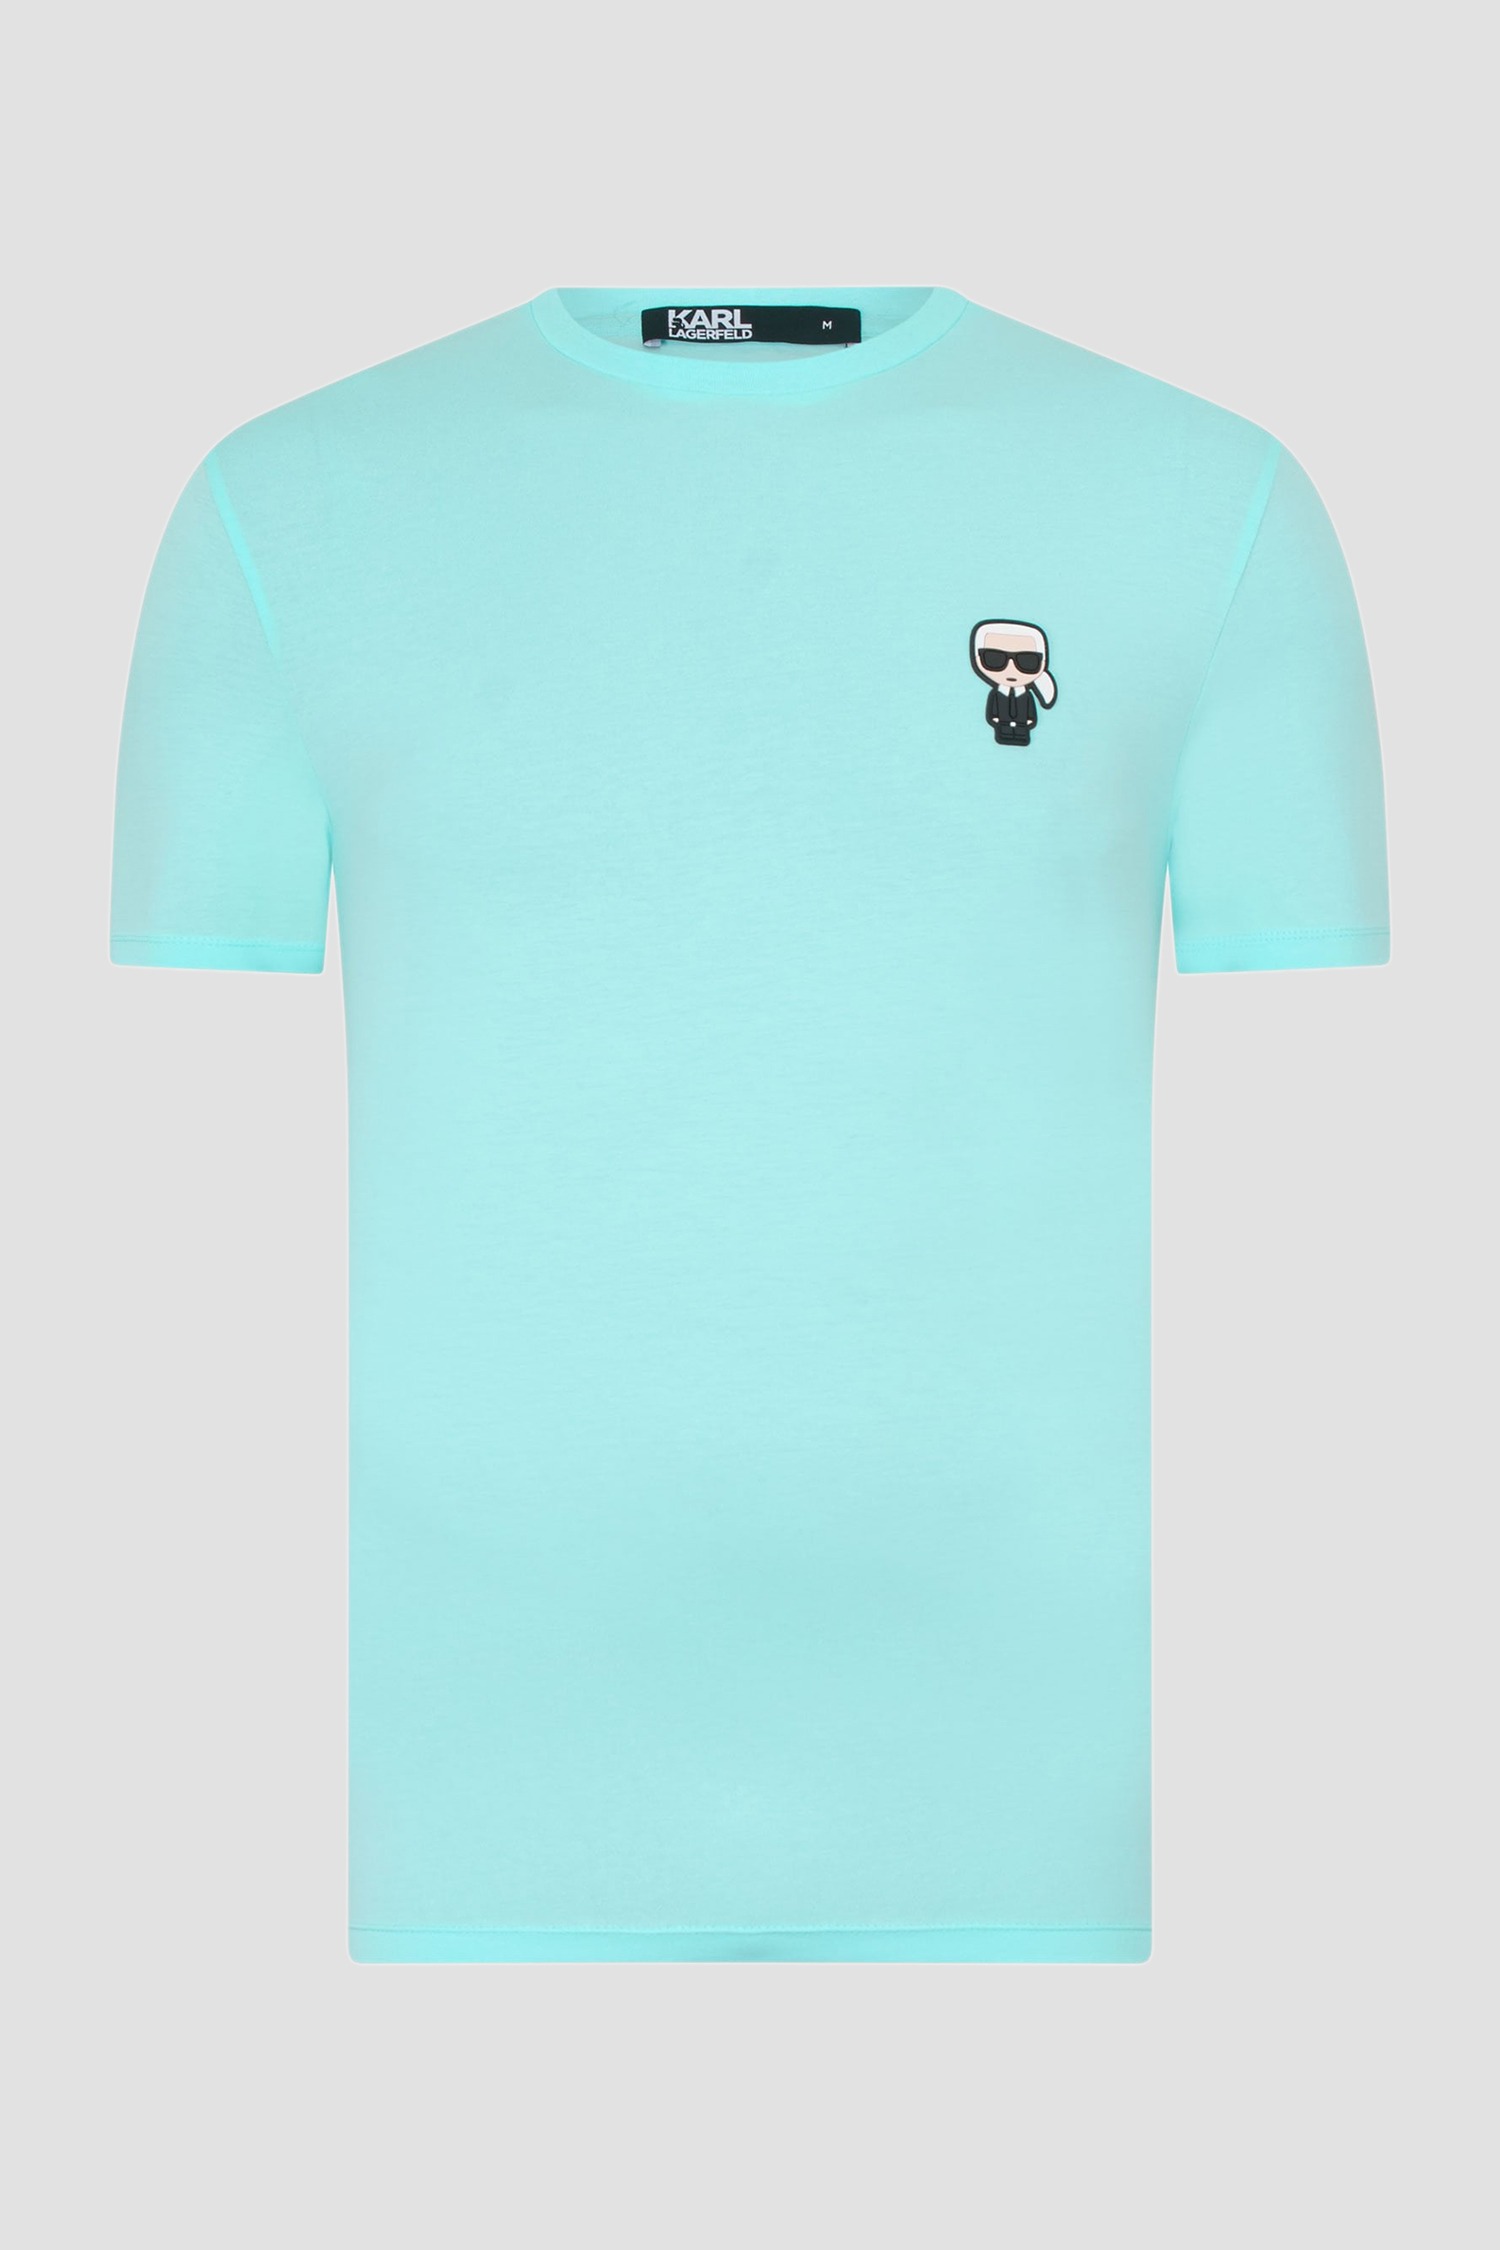 Мужская голубая футболка Karl Lagerfeld 521221.755027;500